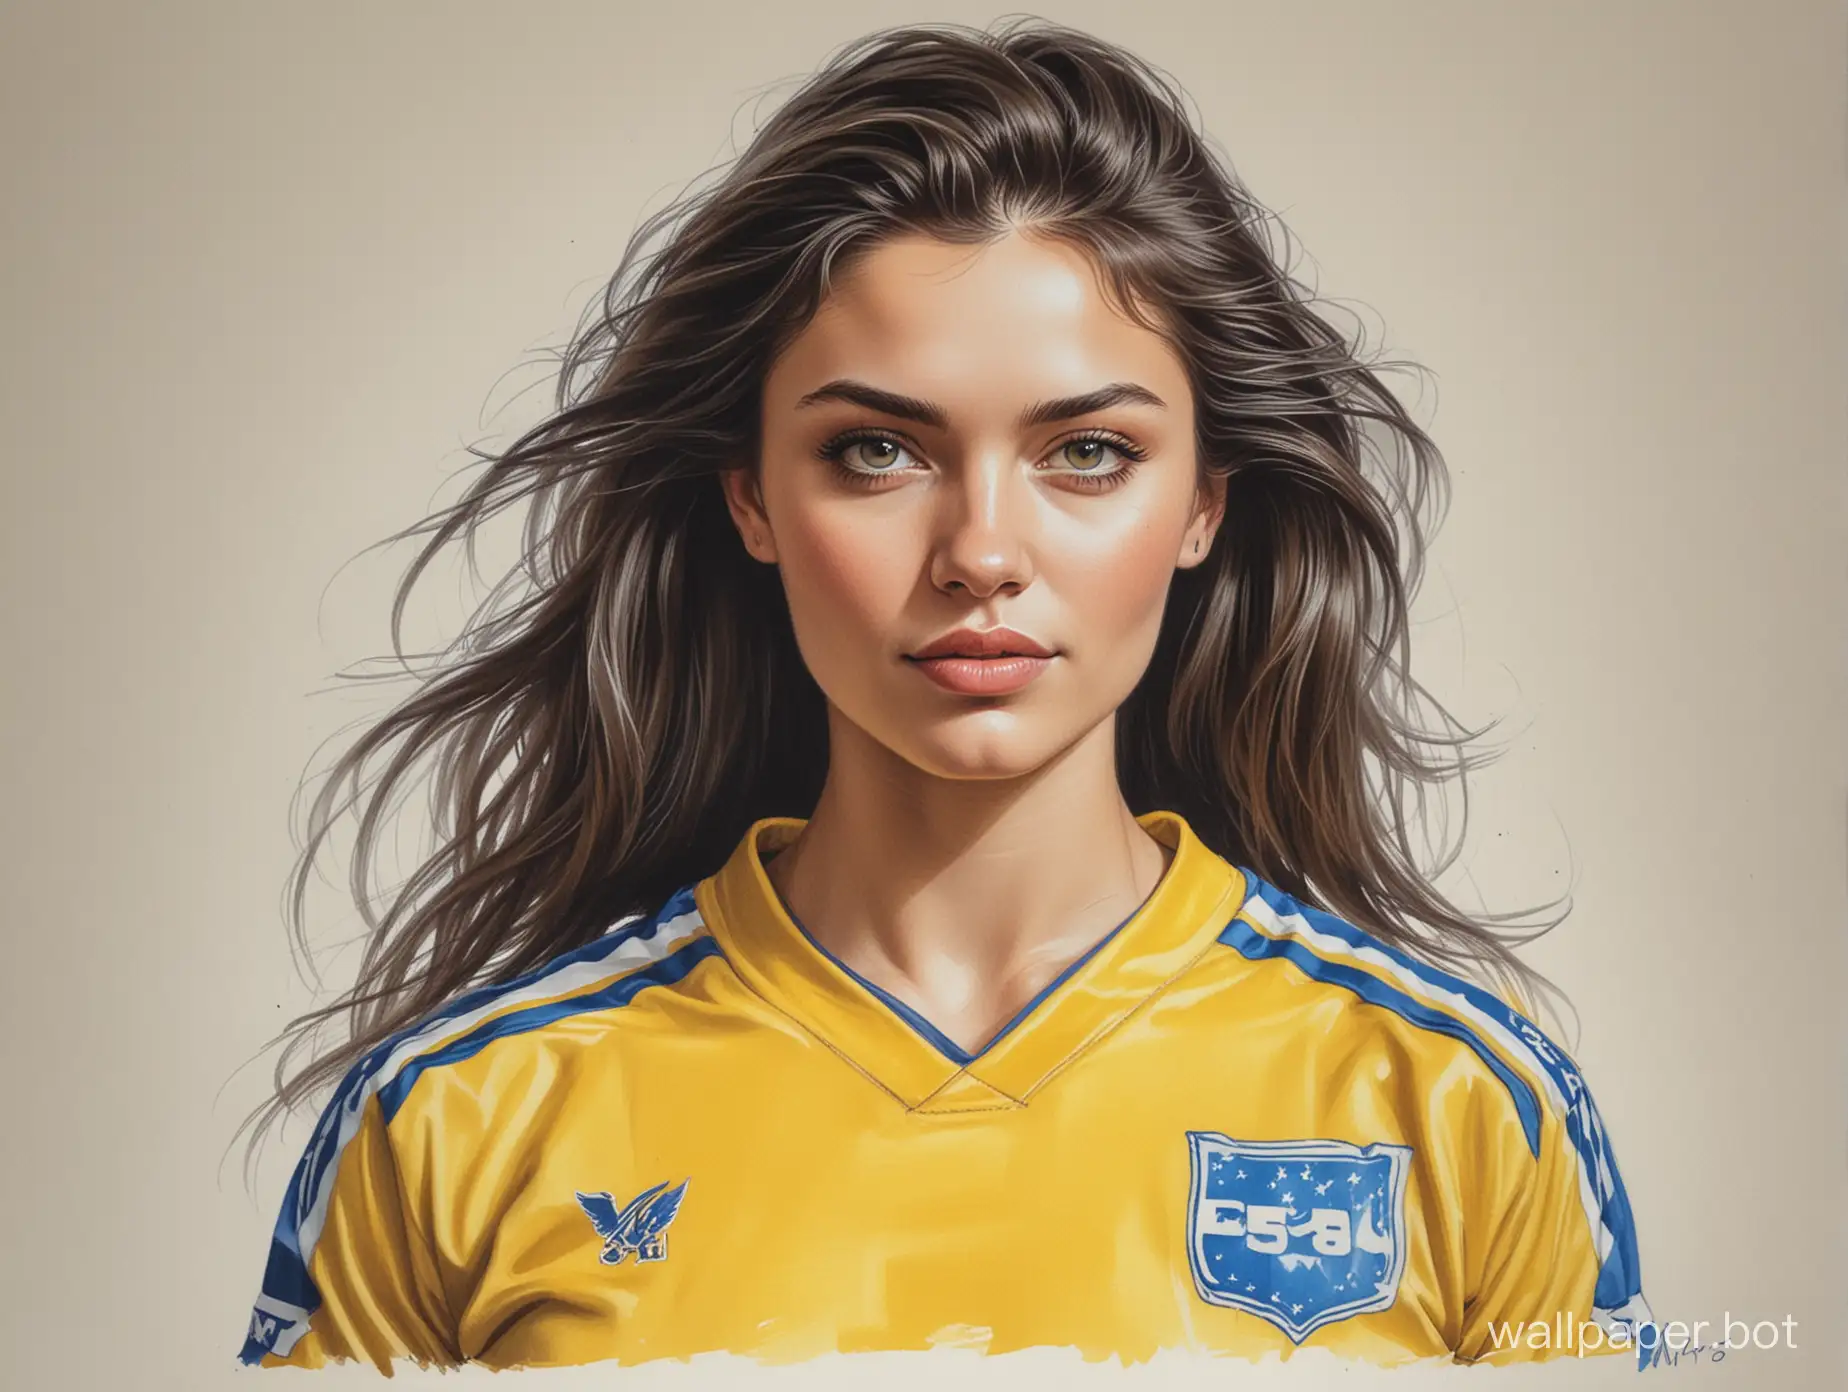 Portrait-Sketch-of-Valeria-Prigozhina-in-YellowBlue-Soccer-Uniform